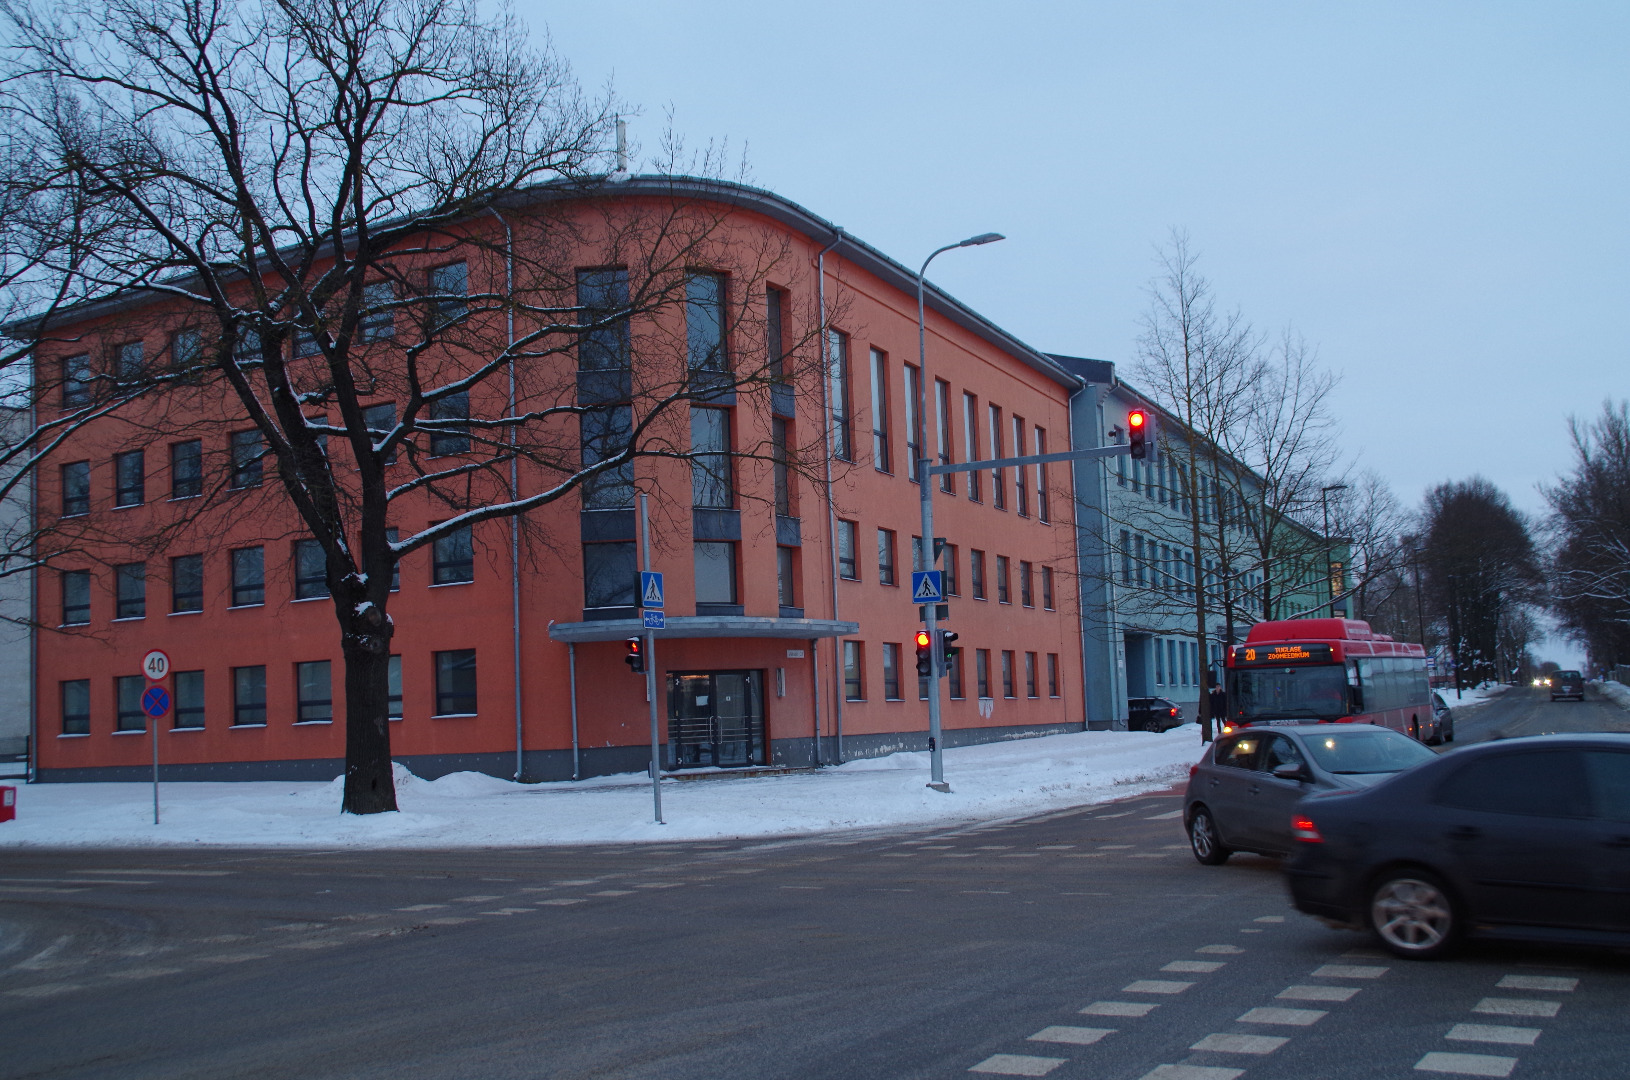 At the corner of Tartu PTK building rephoto